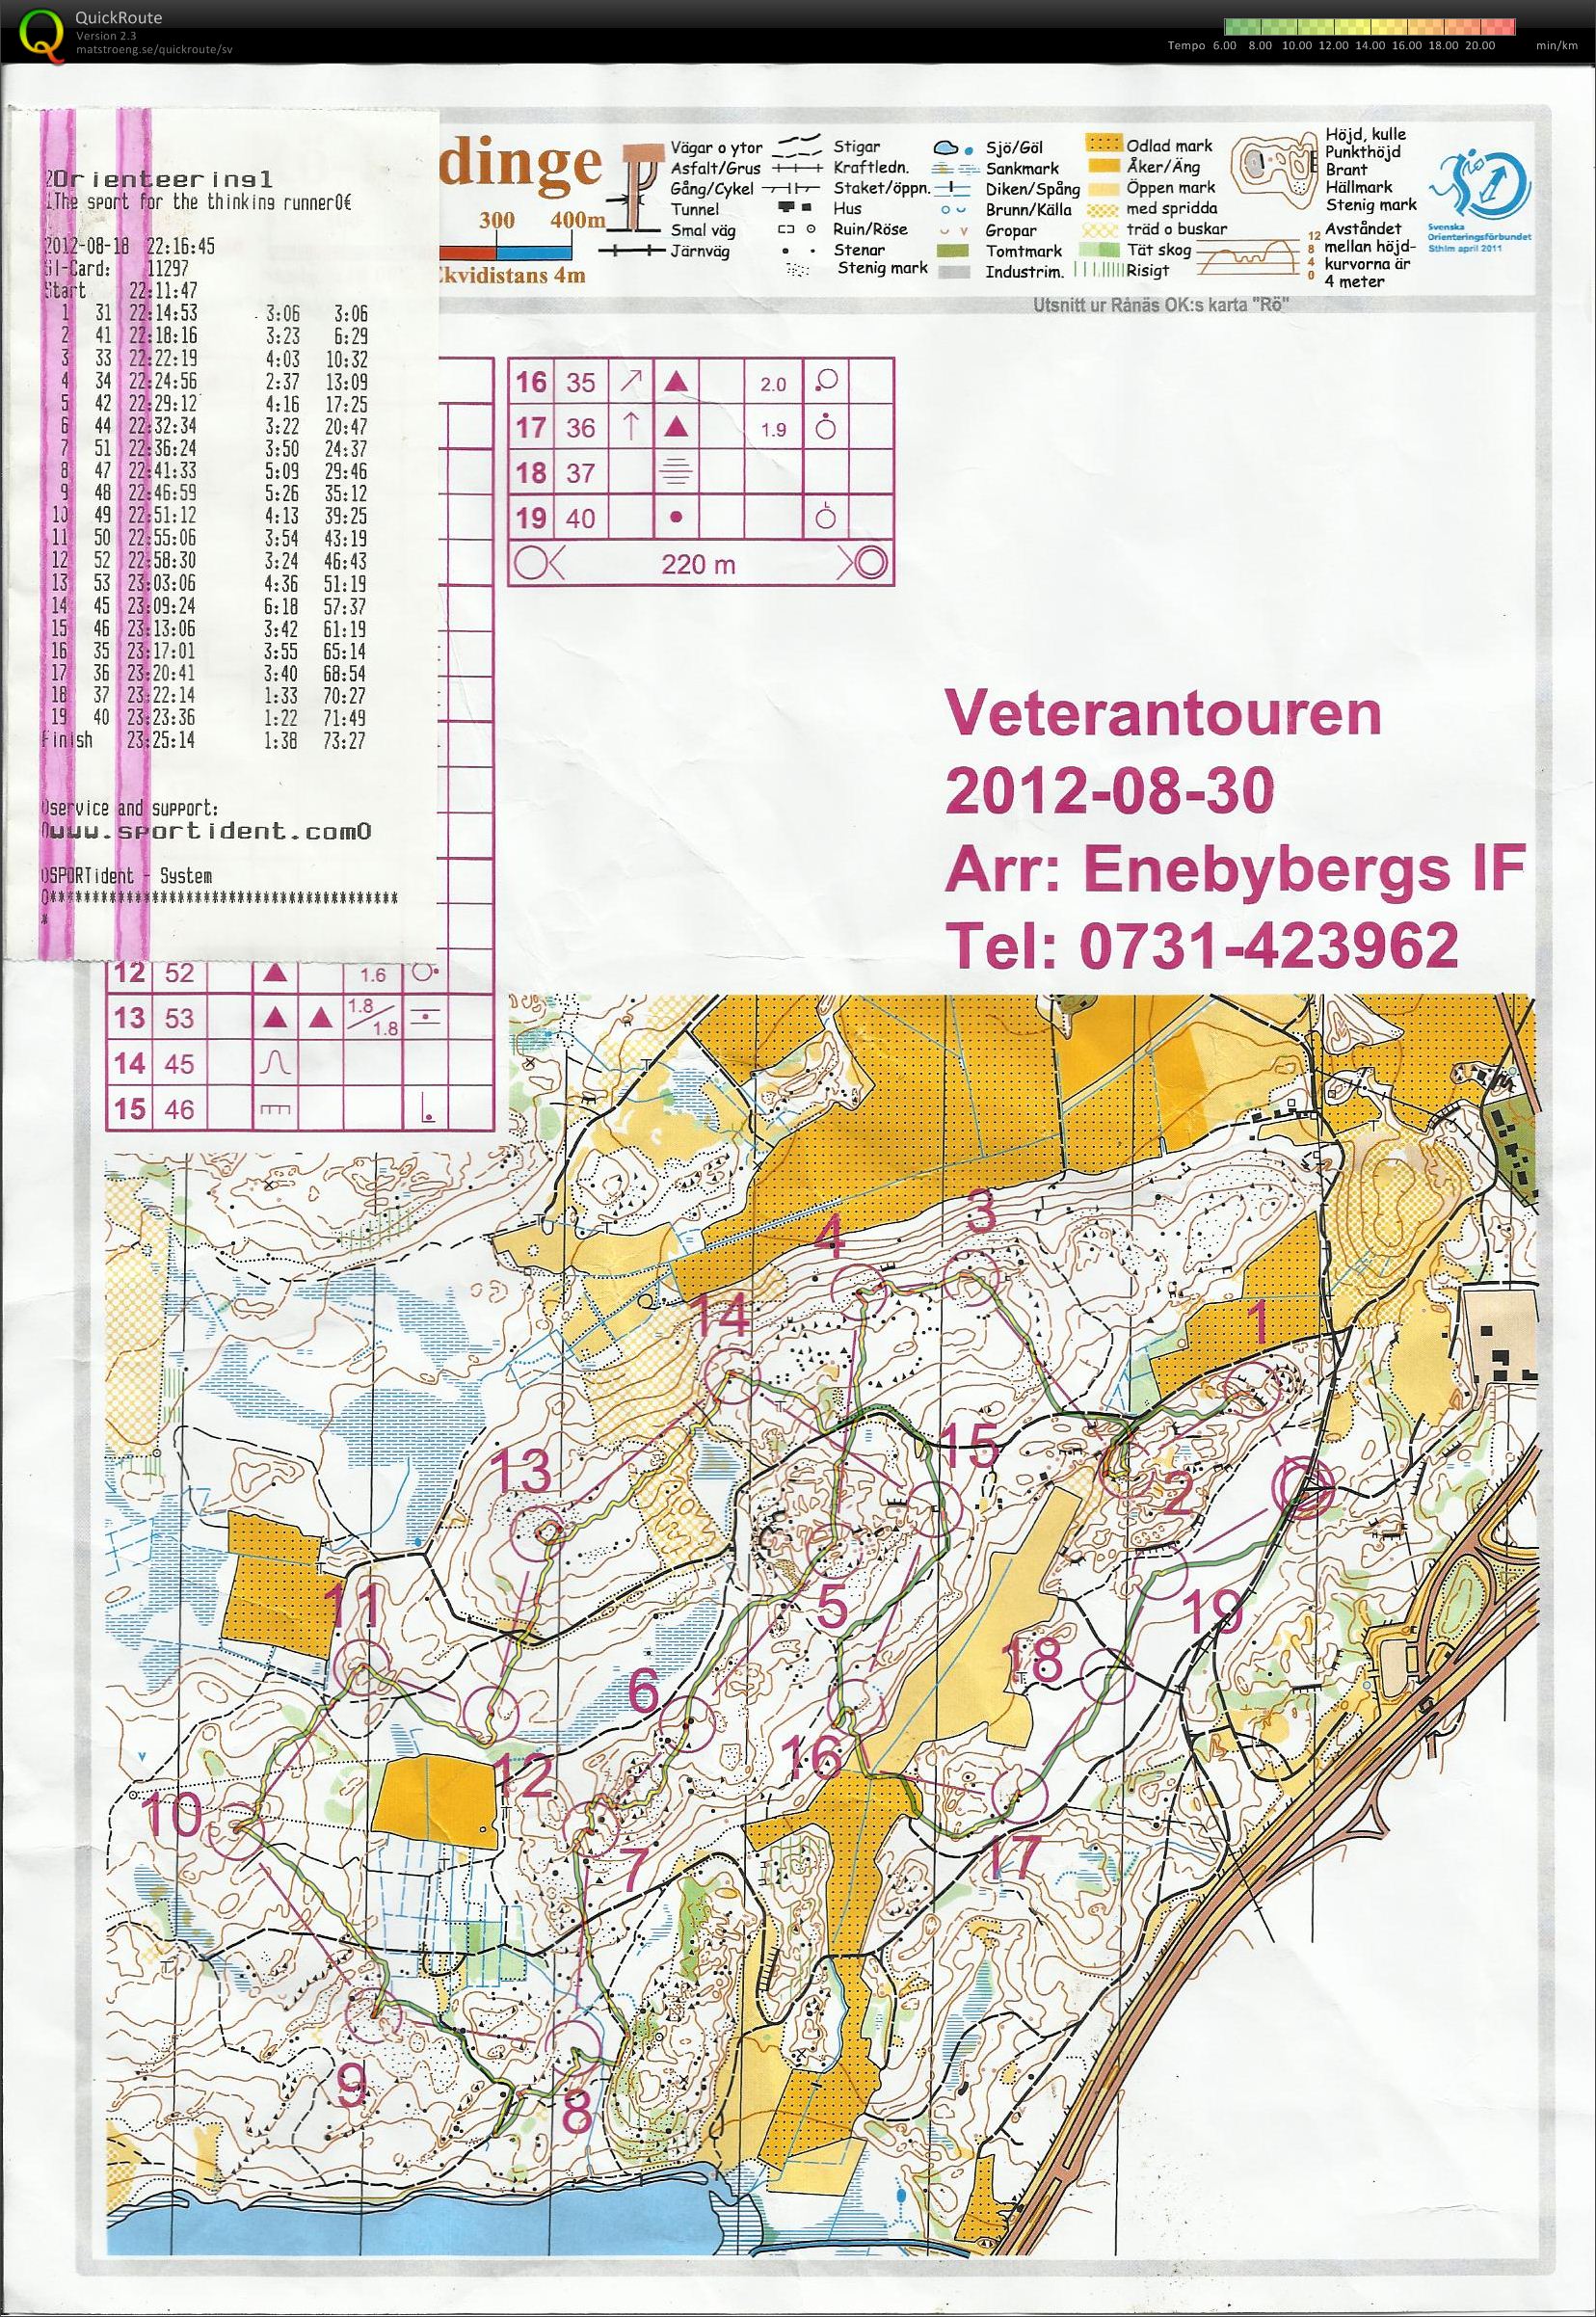 Veterantouren Enebyberg (30/08/2012)